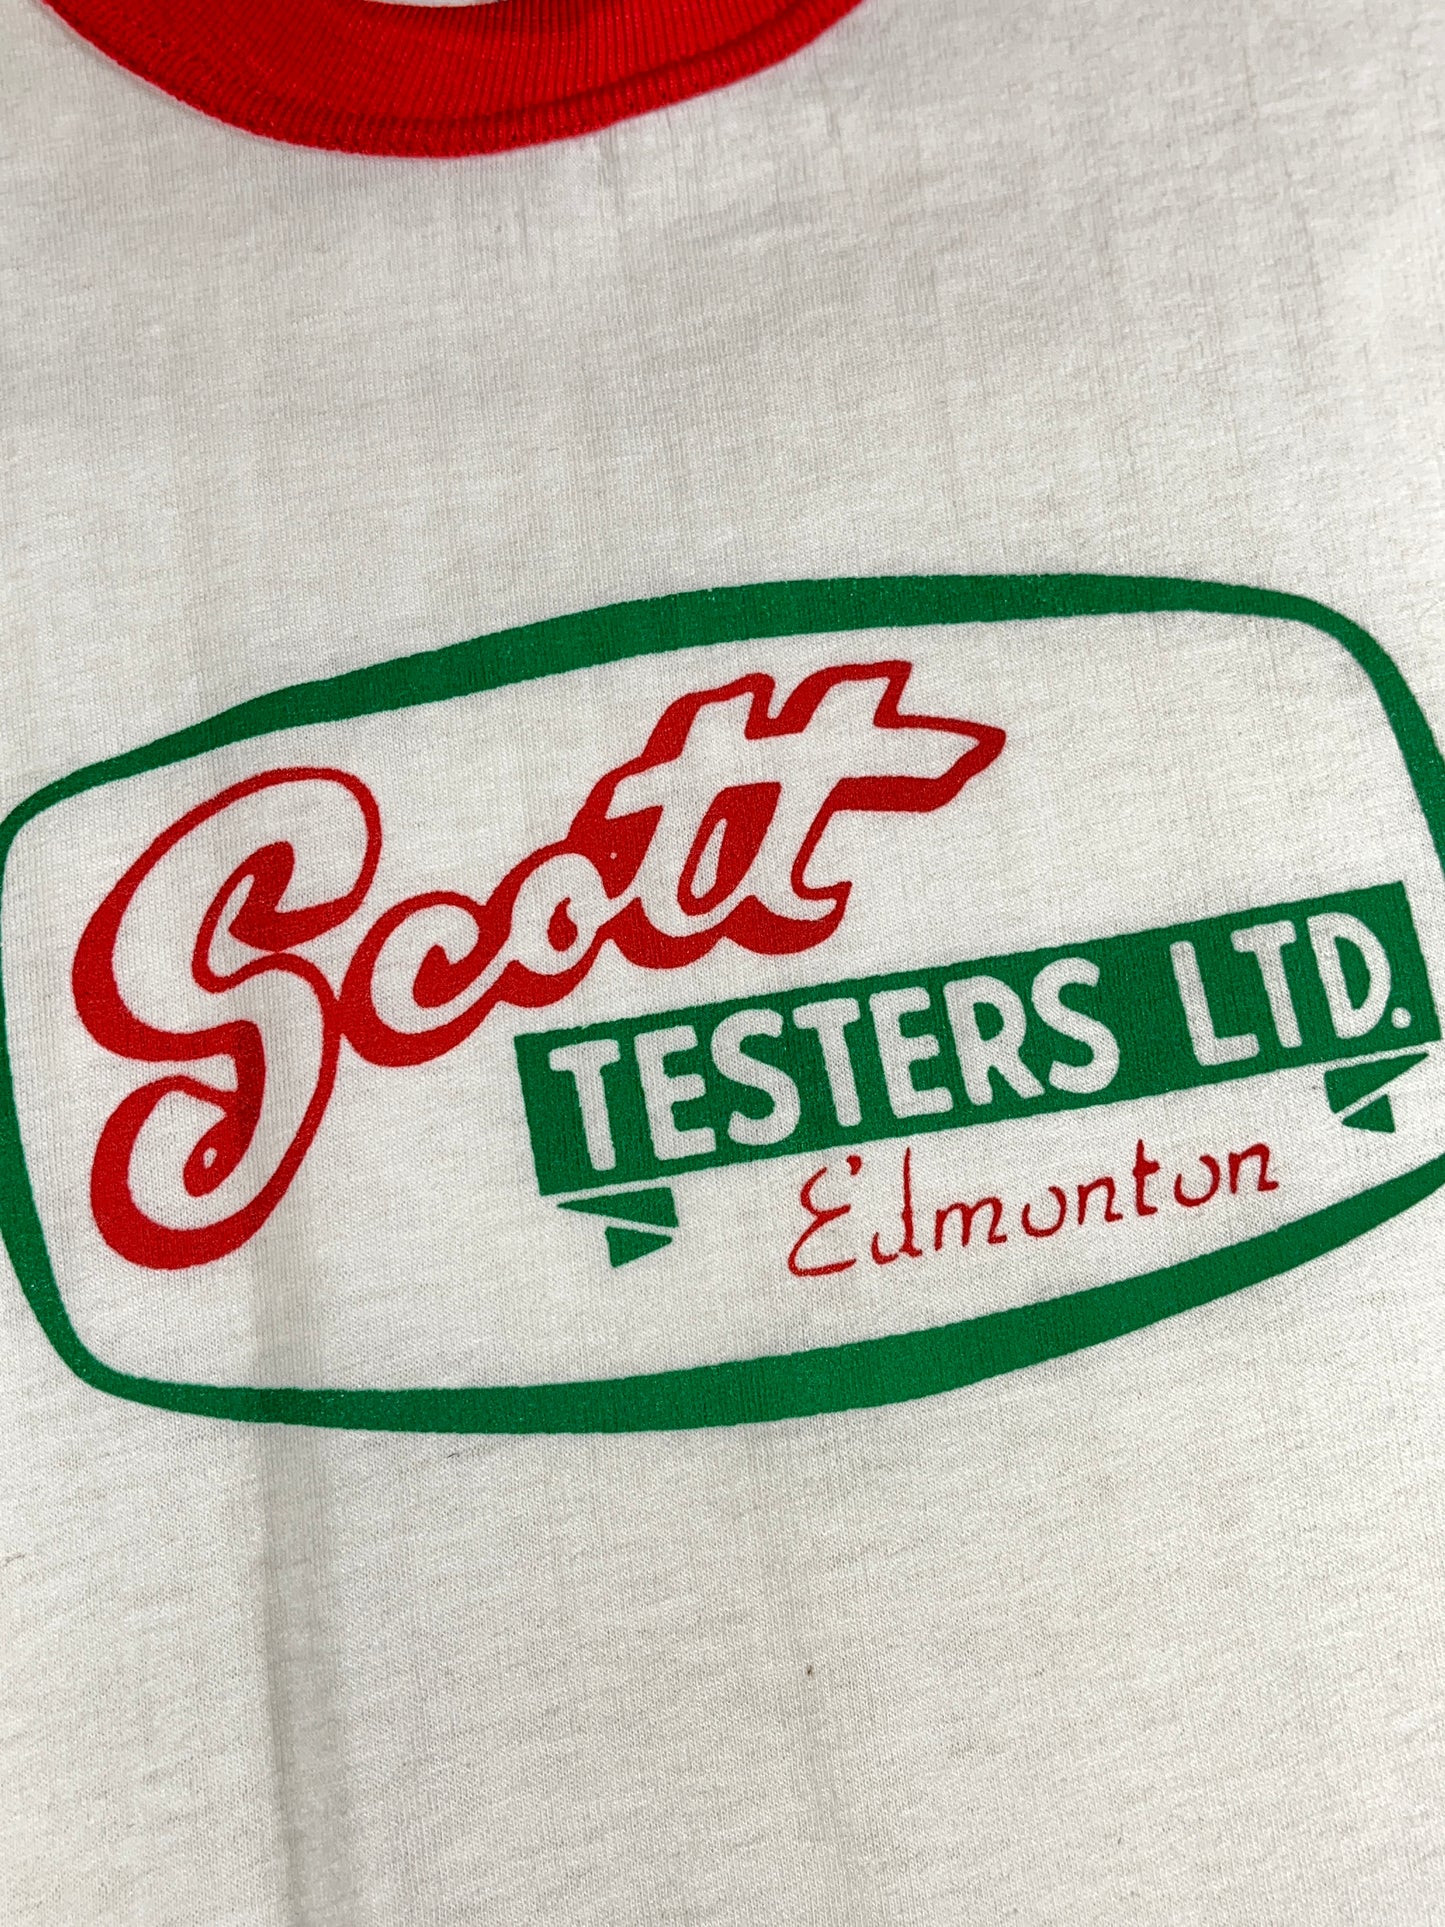 Vintage Scott Testers T-Shirt 80's Ringer Tiger Brand